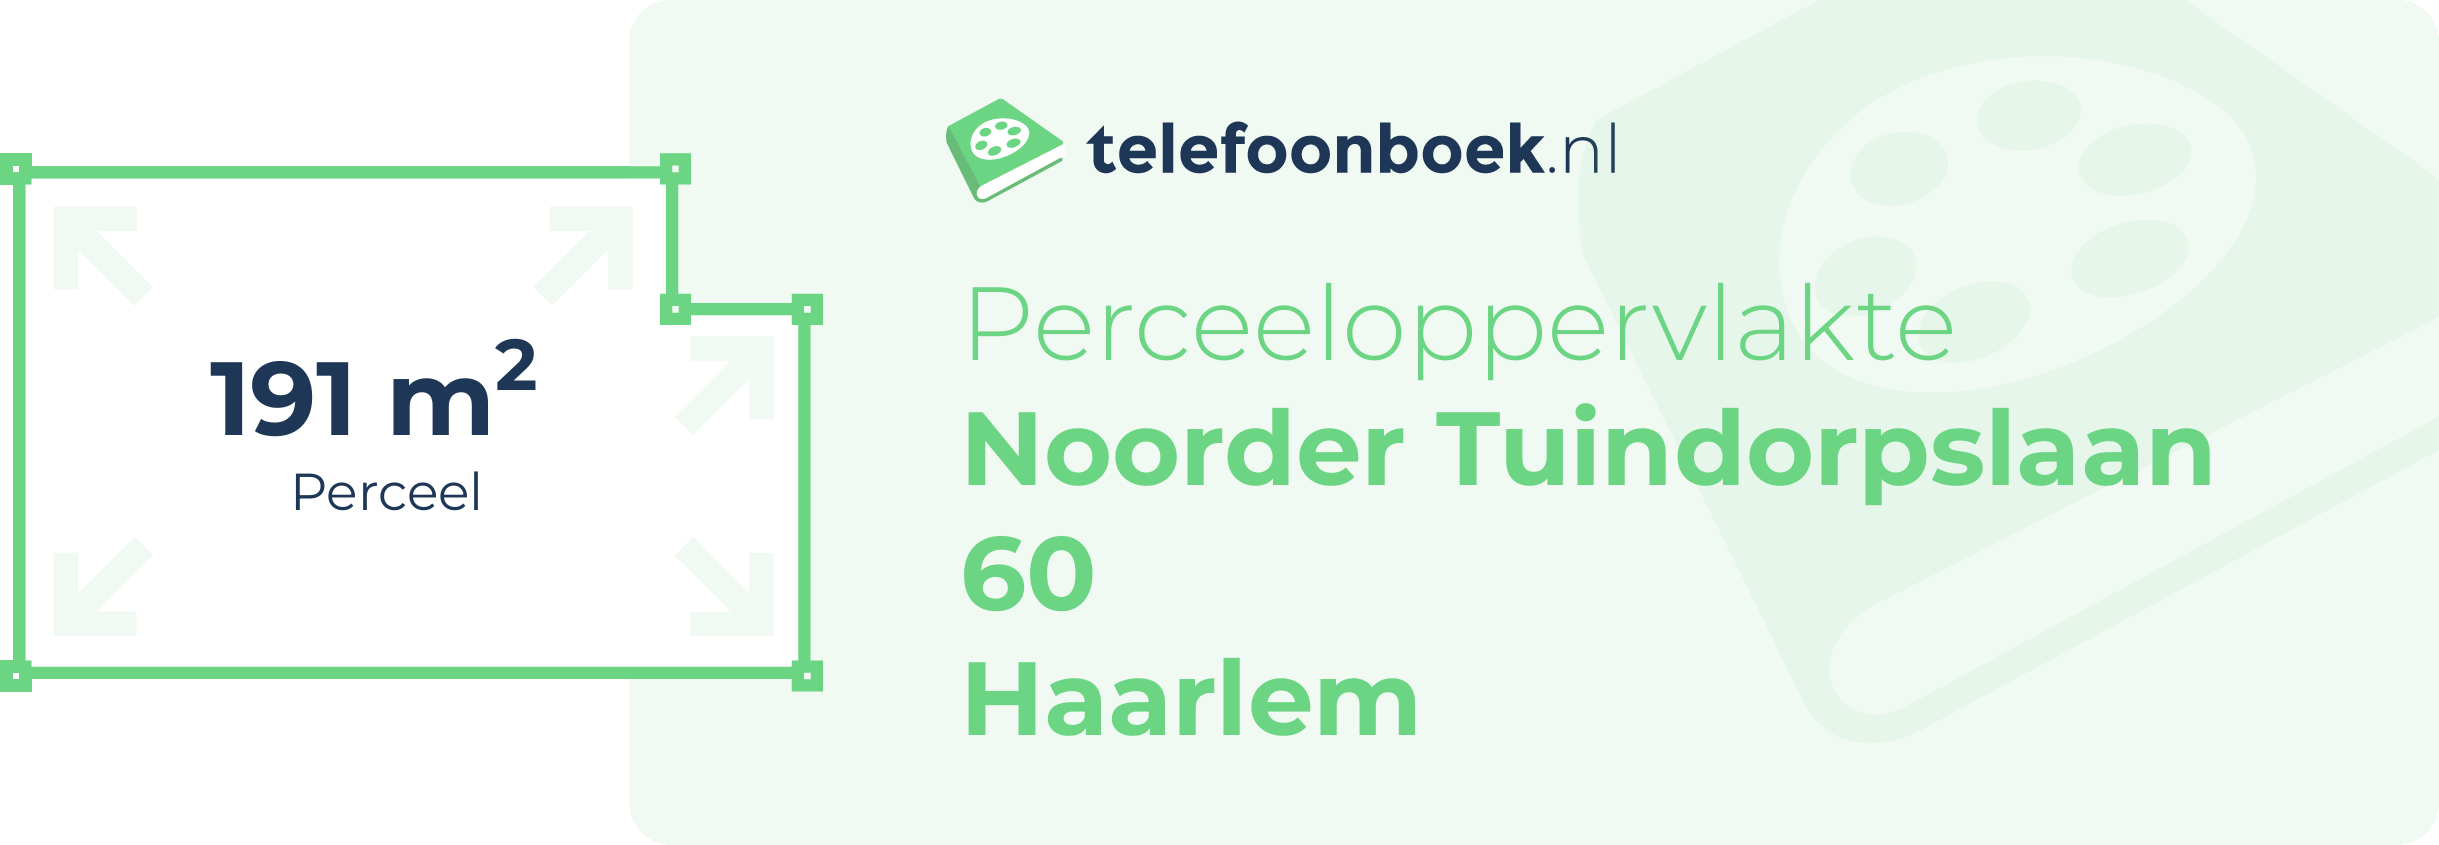 Perceeloppervlakte Noorder Tuindorpslaan 60 Haarlem